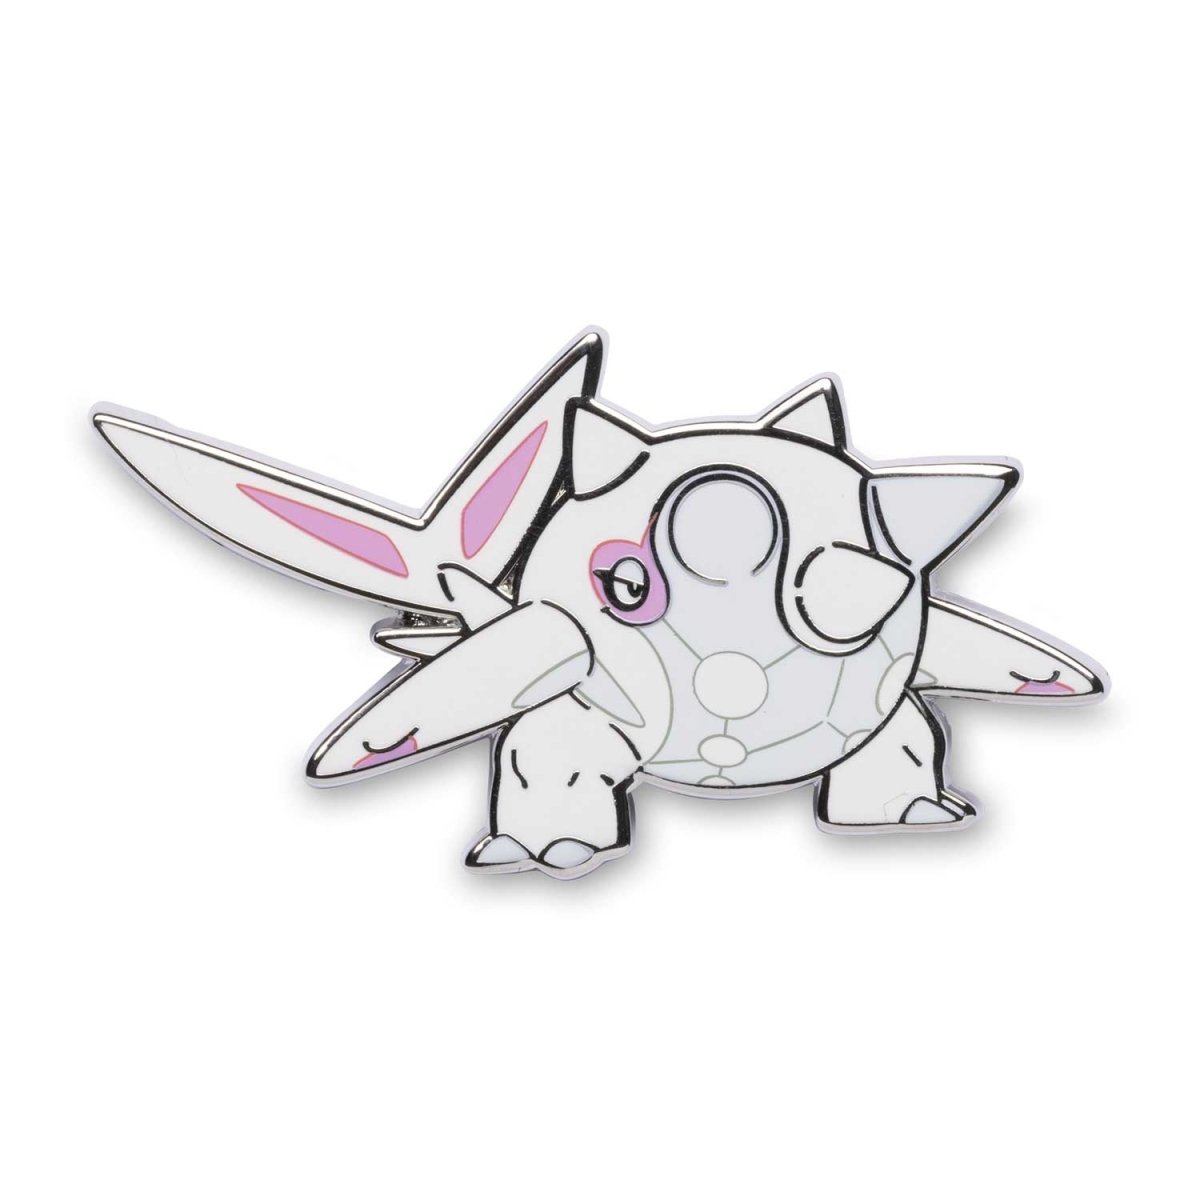 Pin on My Shiny Pokémon